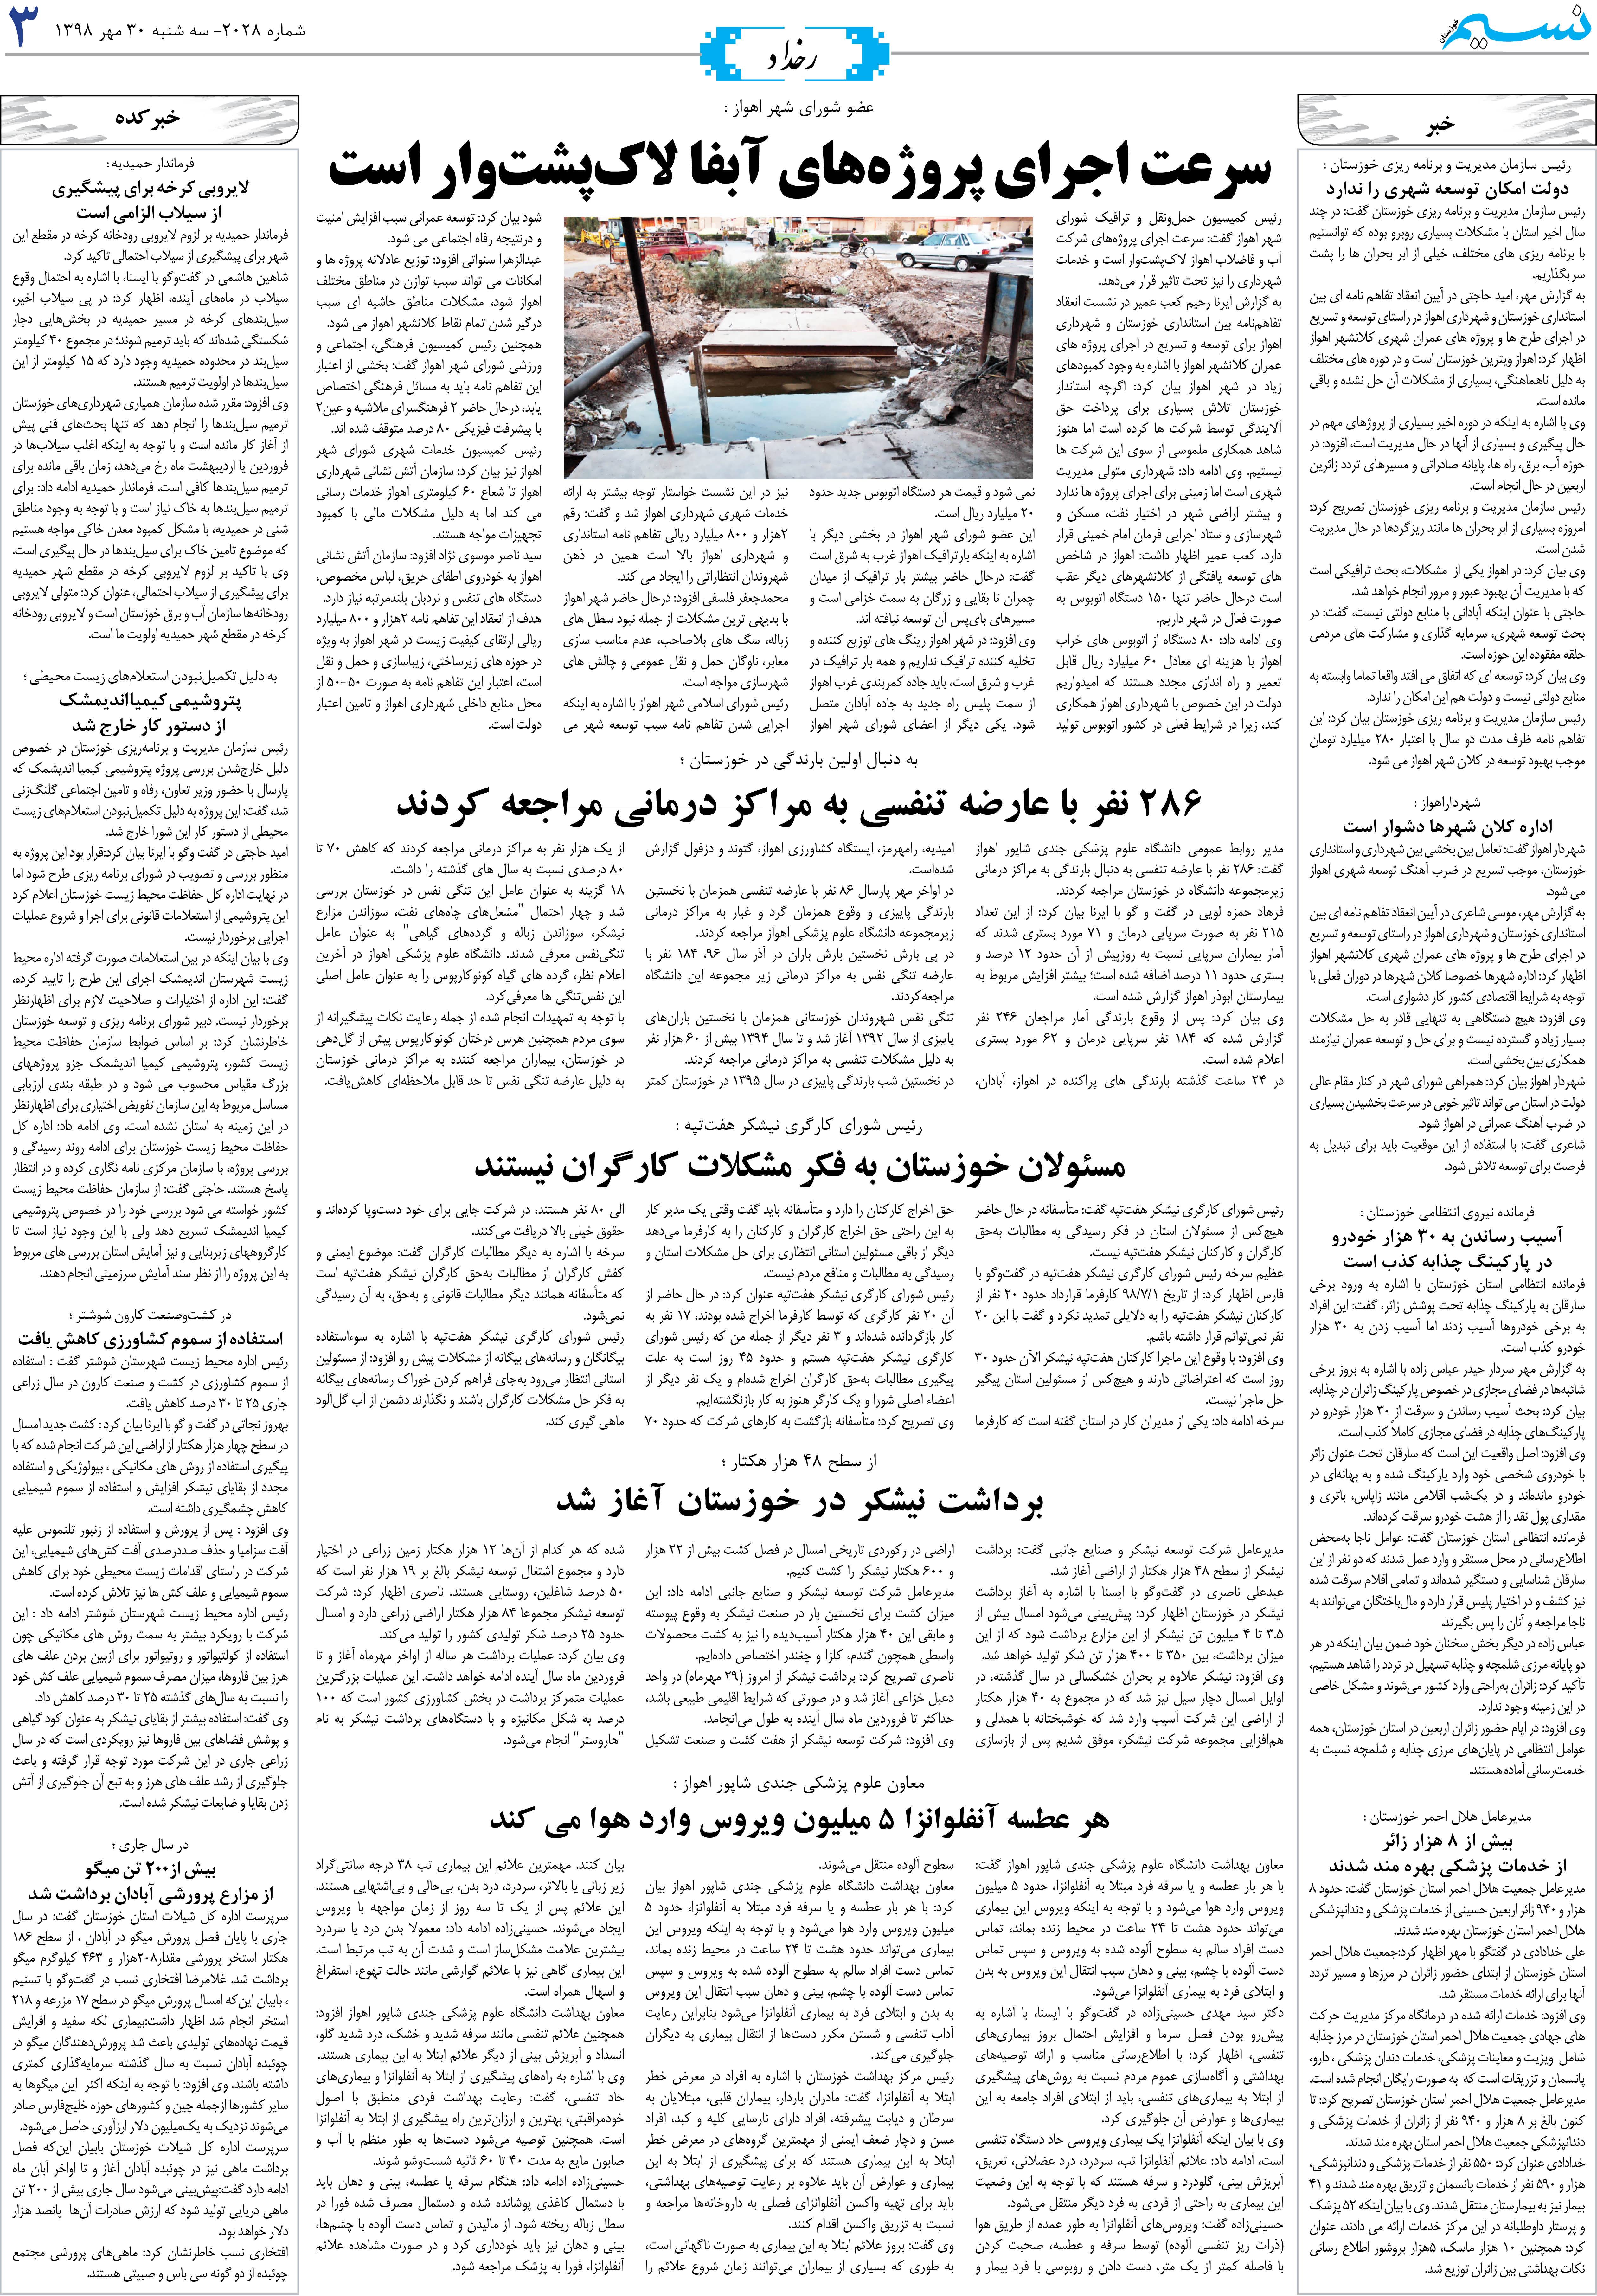 صفحه رخداد روزنامه نسیم شماره 2023